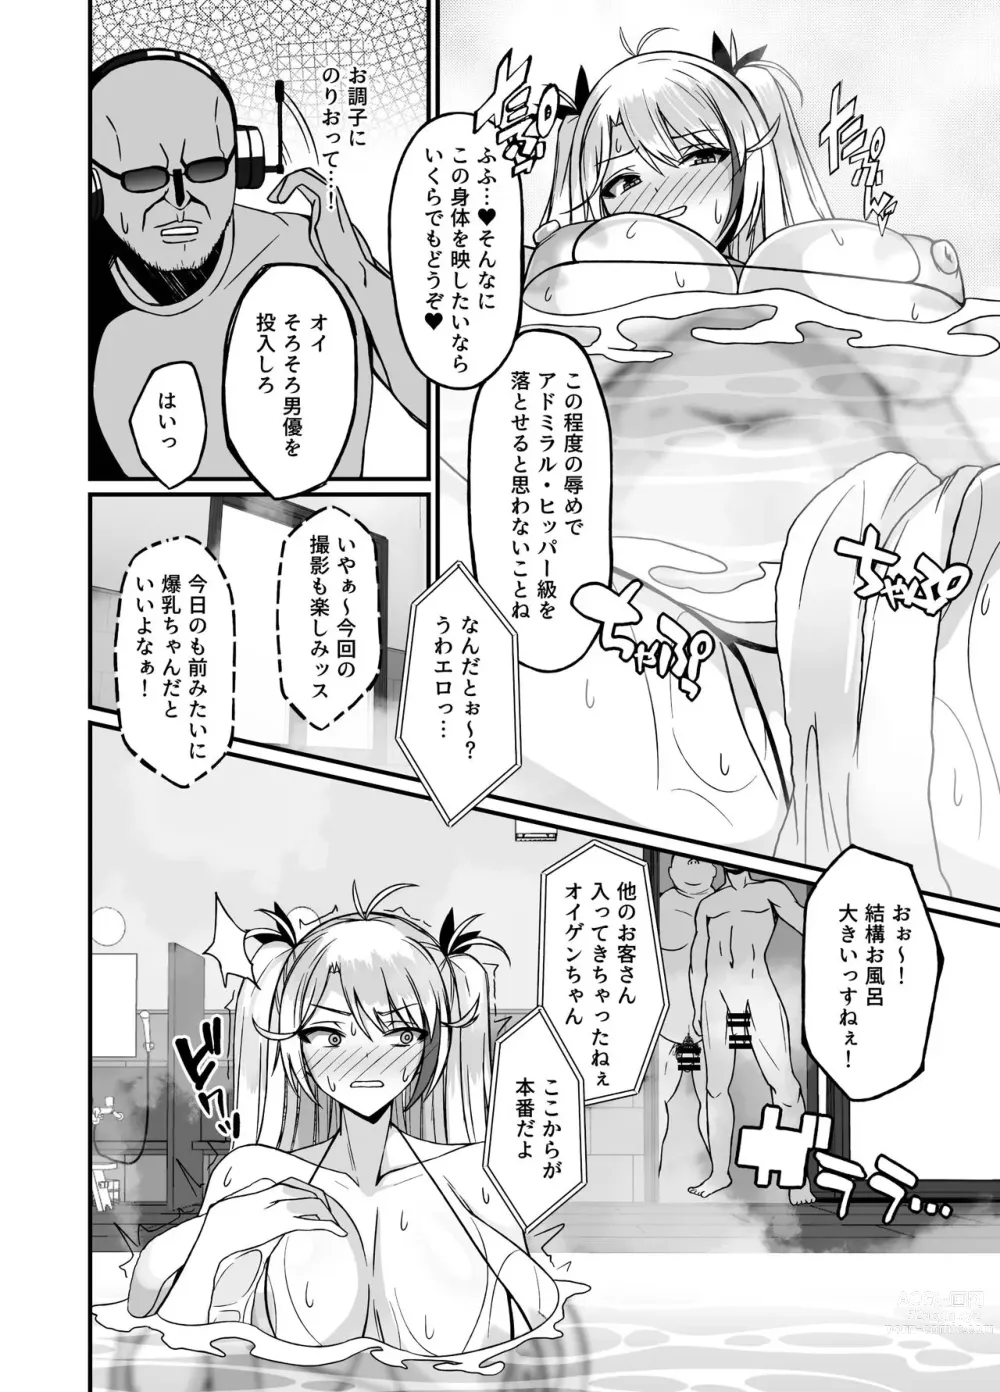 Page 6 of doujinshi Prinz Eugen Otokoyu Sennyuu Challenge